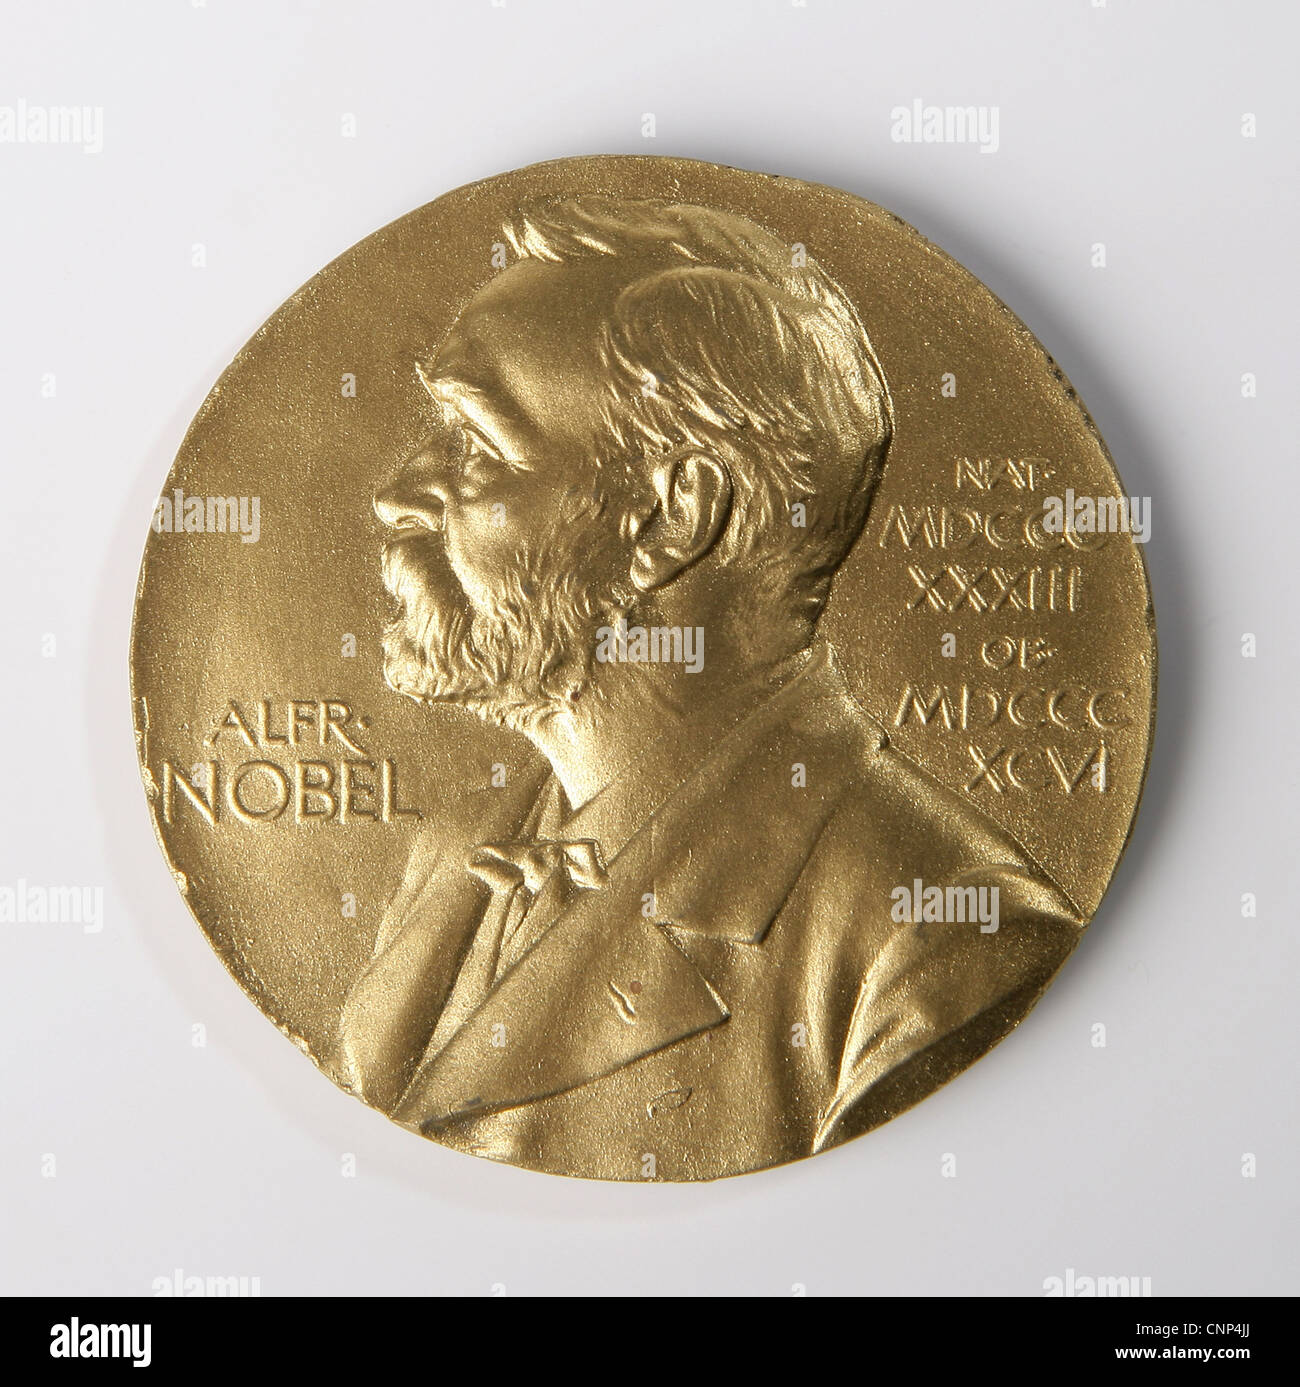 Nobel prize,Nobel,Prize,Medal,Alfred,Gold,Science,Front side Stock Photo